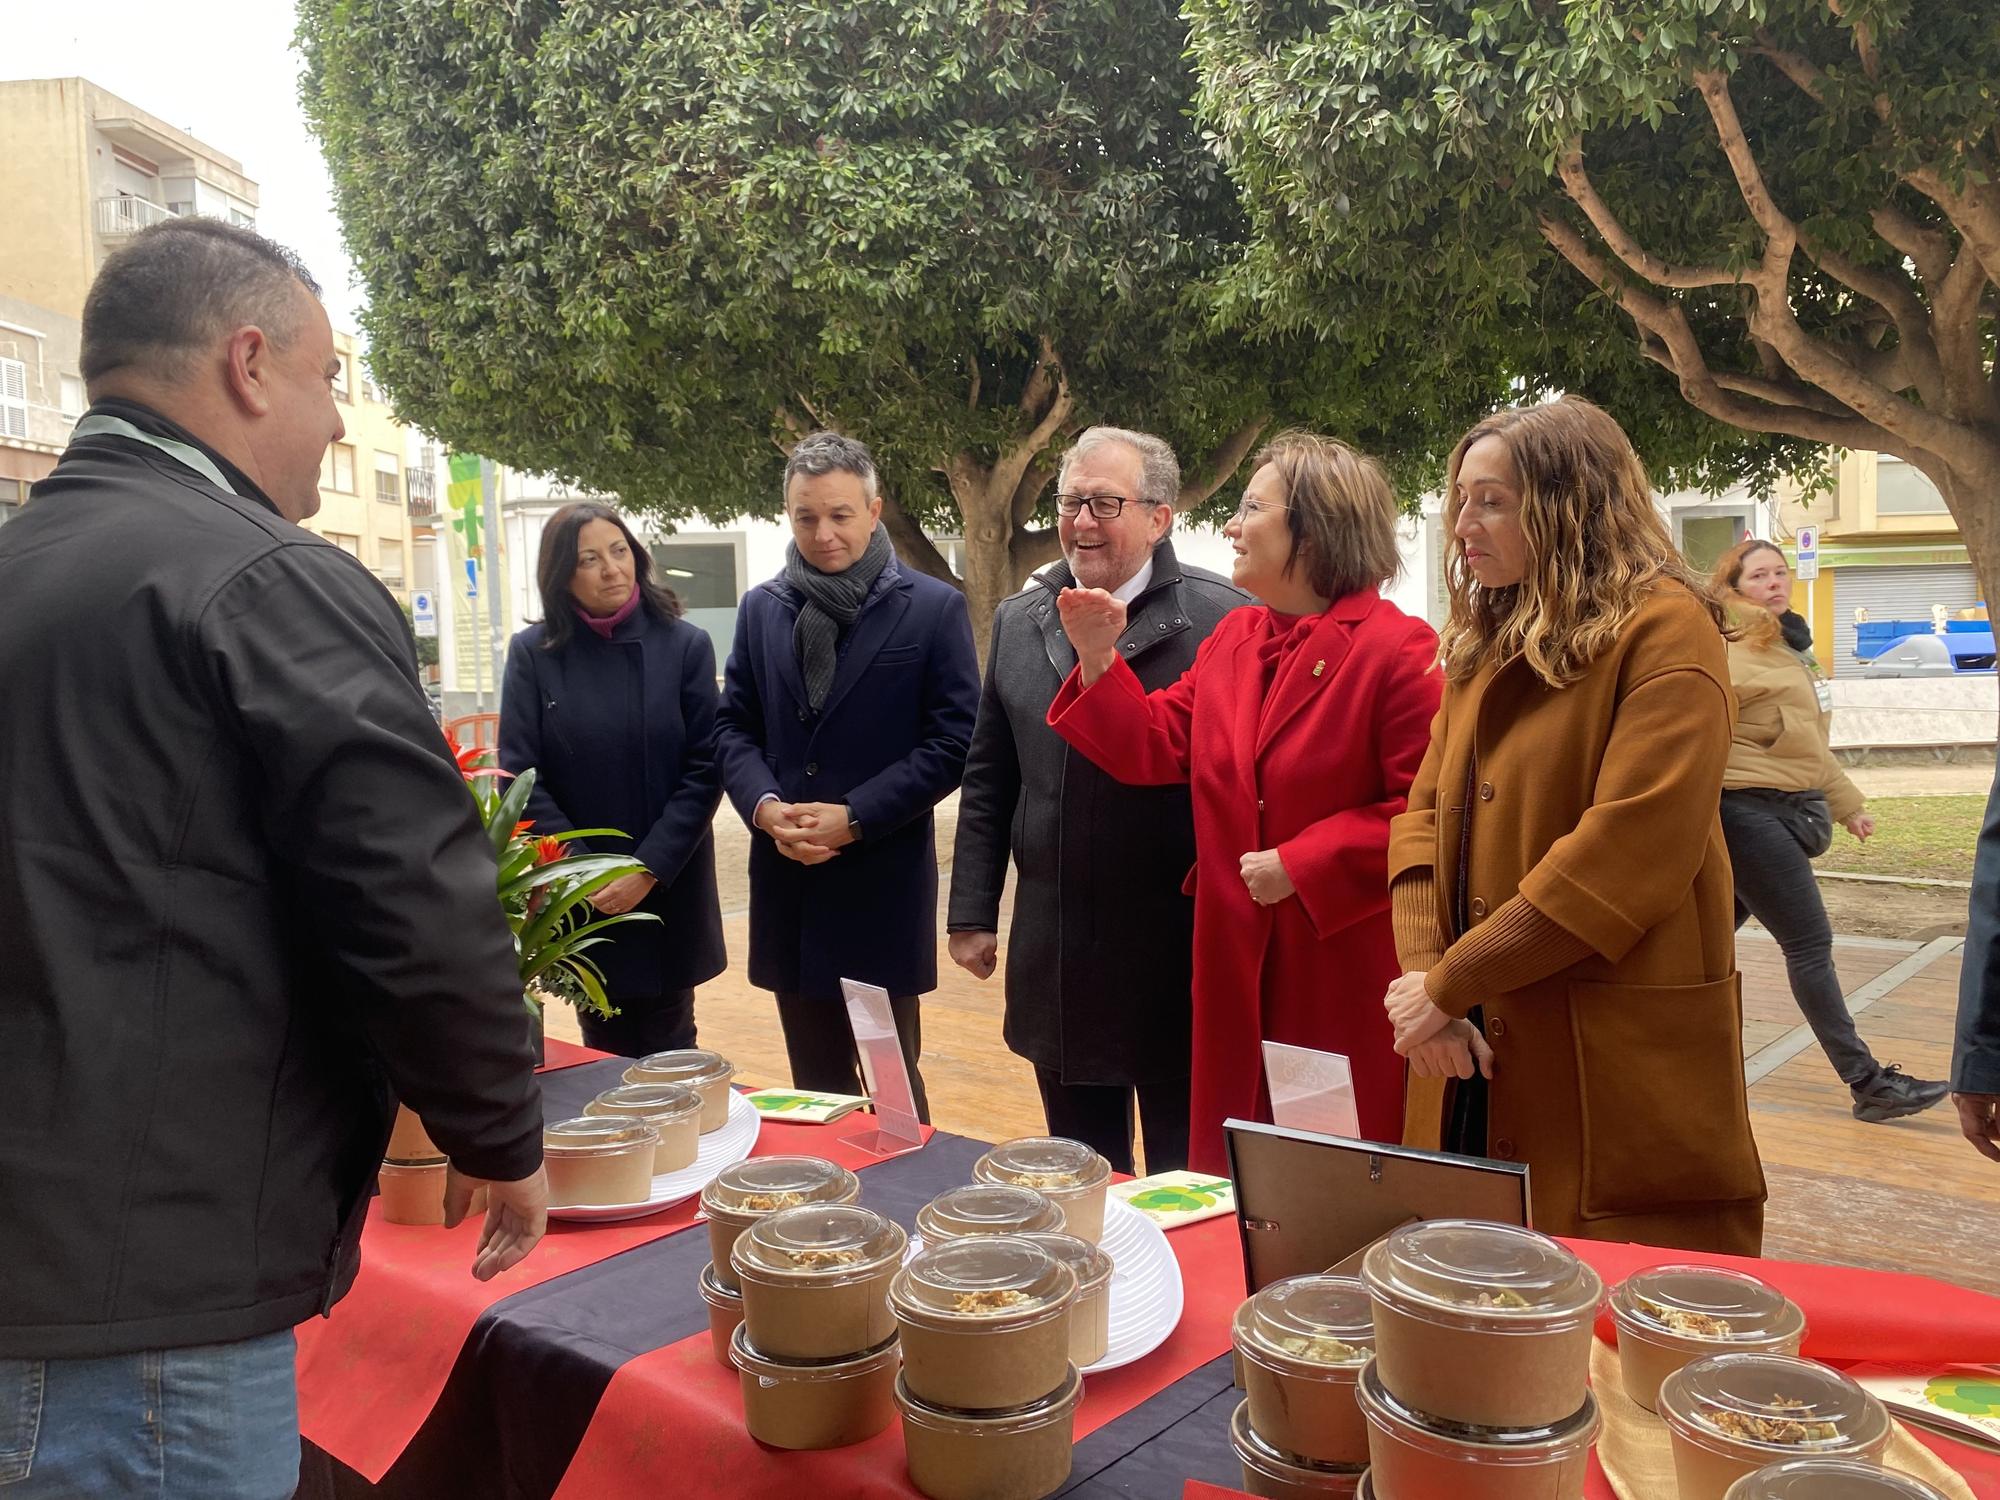 La 'carxofa' vuelve a llenar el centro de Benicarló con la degustación gastronómica